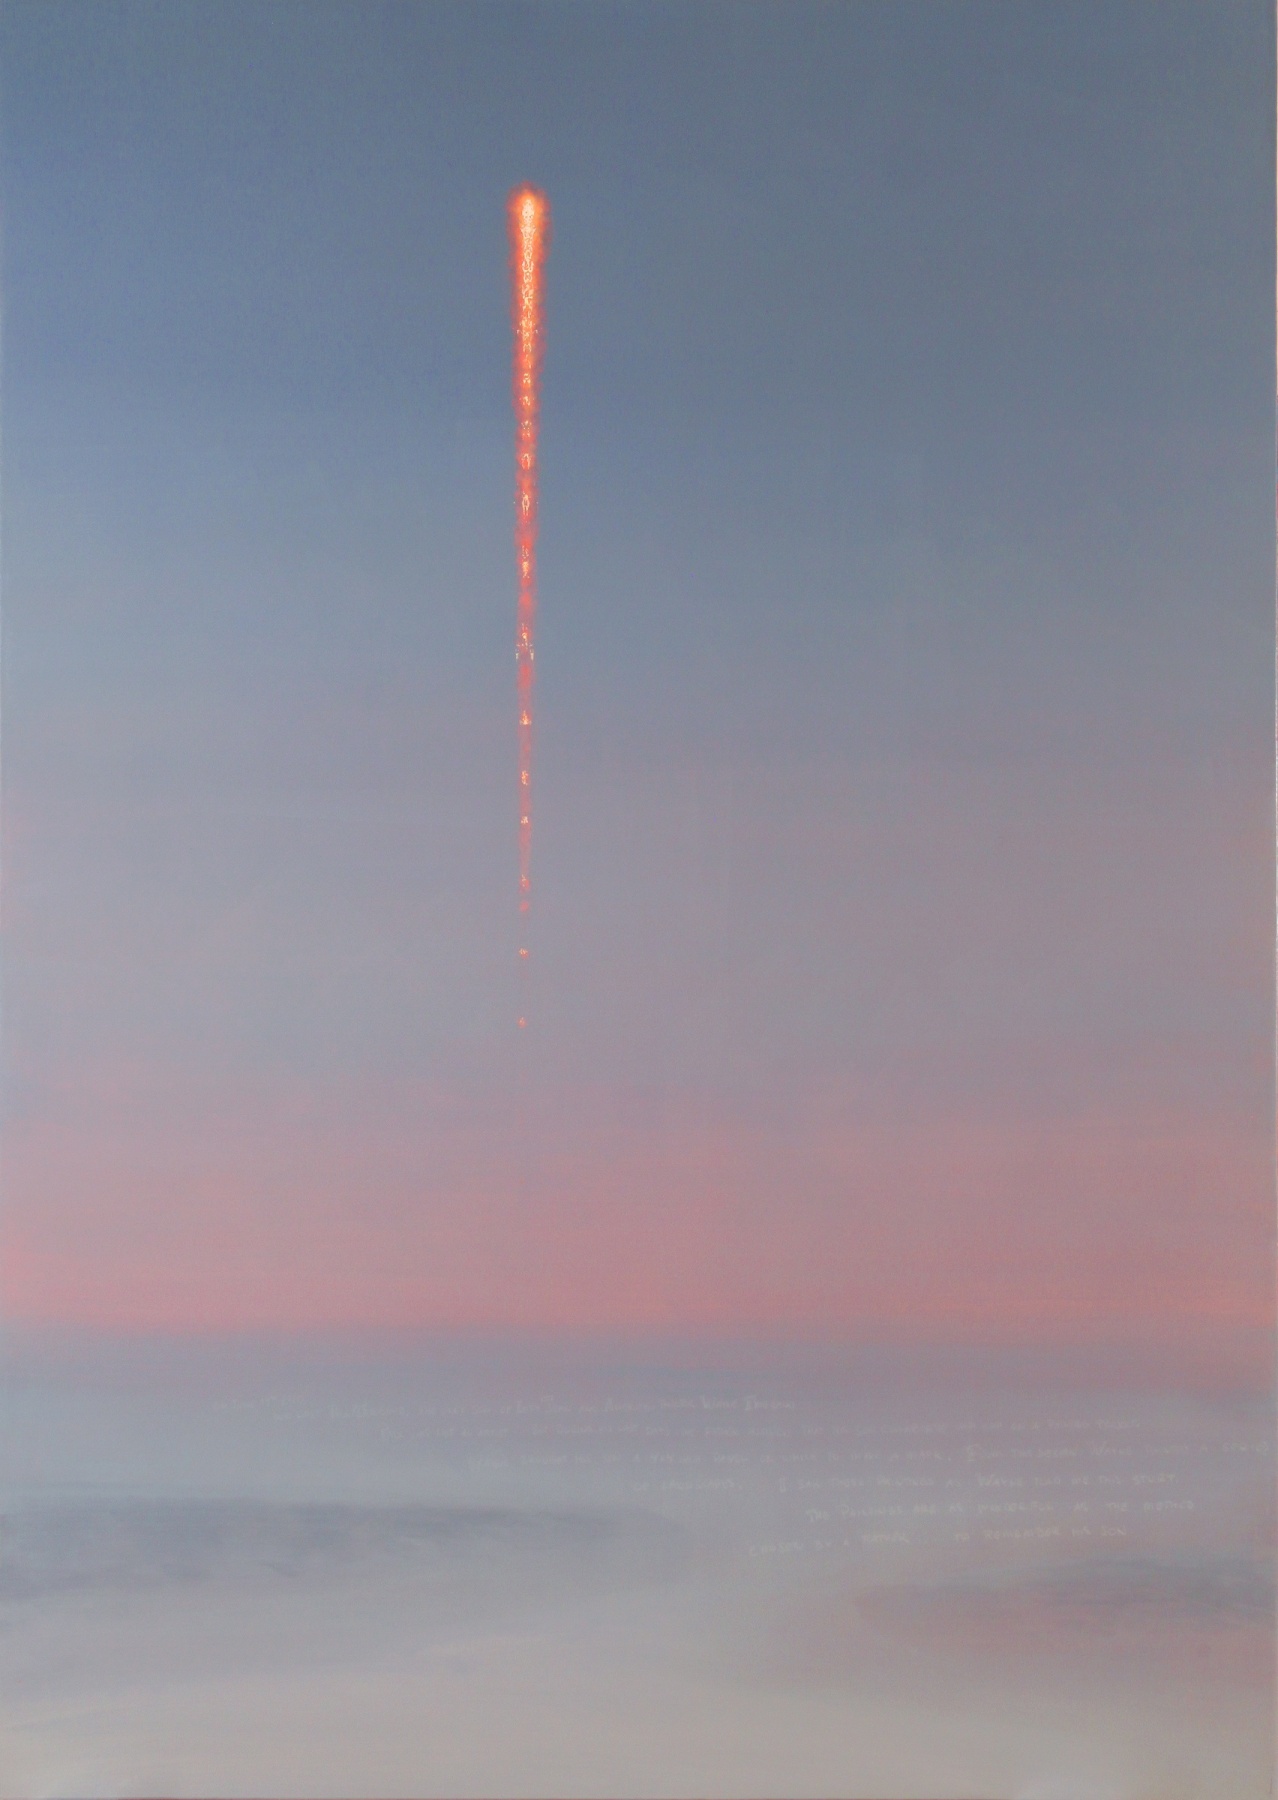 Stephen Hannock, Paul&#039;s Rocket at First Light (Mass MoCA #152), 2011&nbsp;&nbsp;&nbsp;&nbsp;